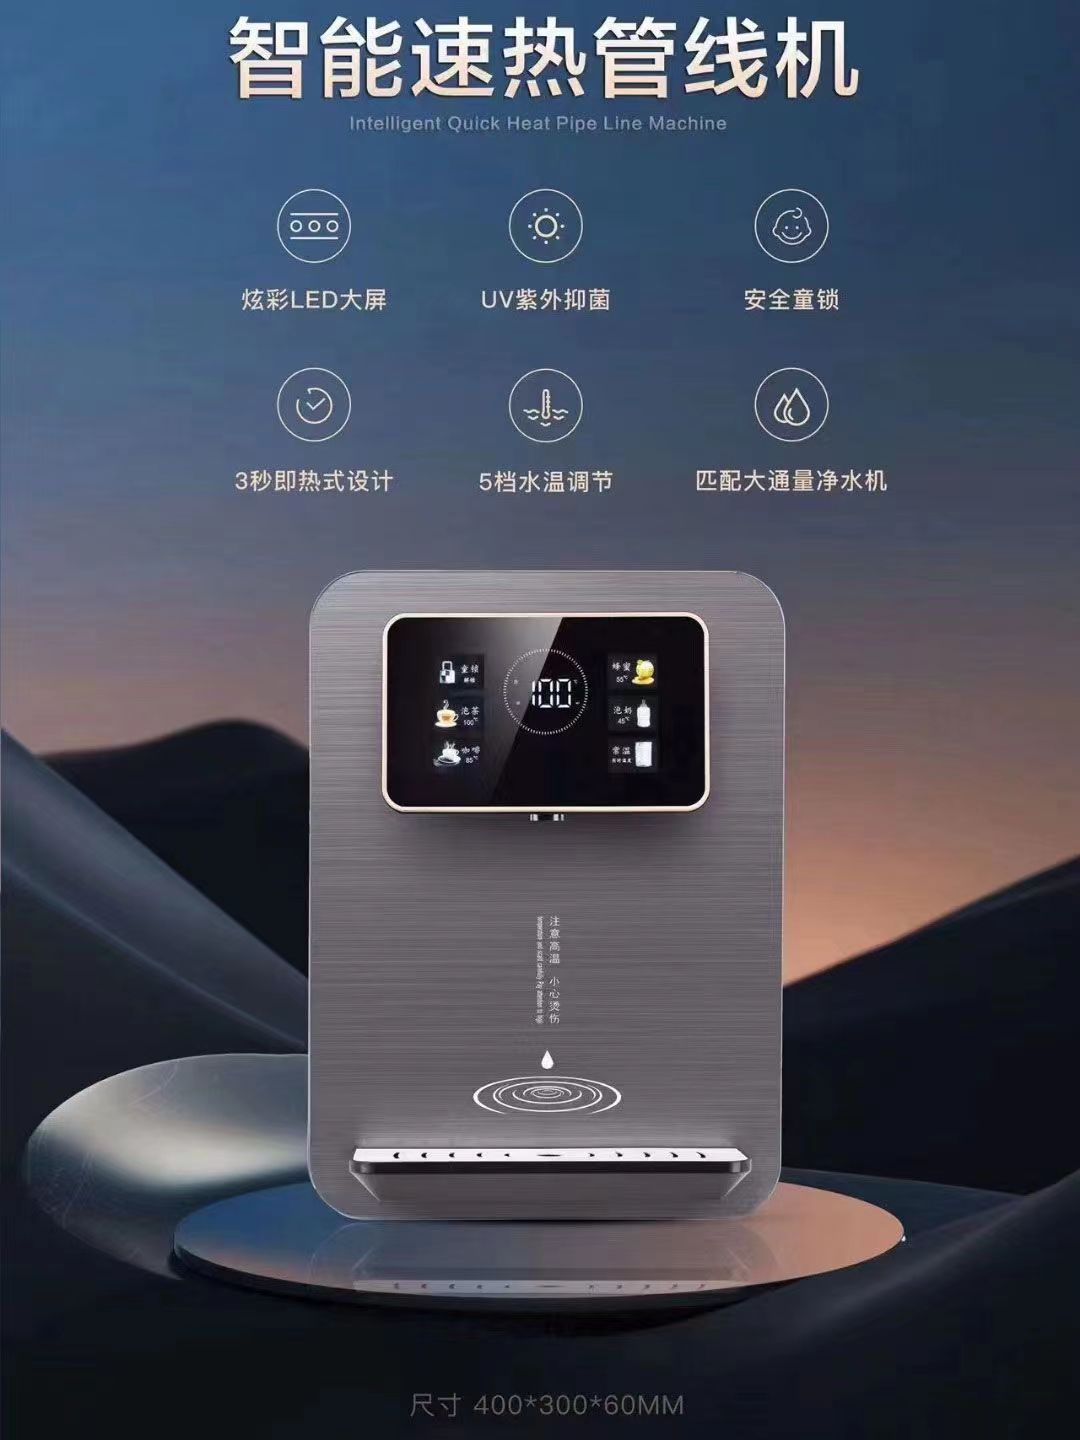 先科3秒速热UA抑菌管线机大屏全自动即热式新款超薄壁挂式饮水机